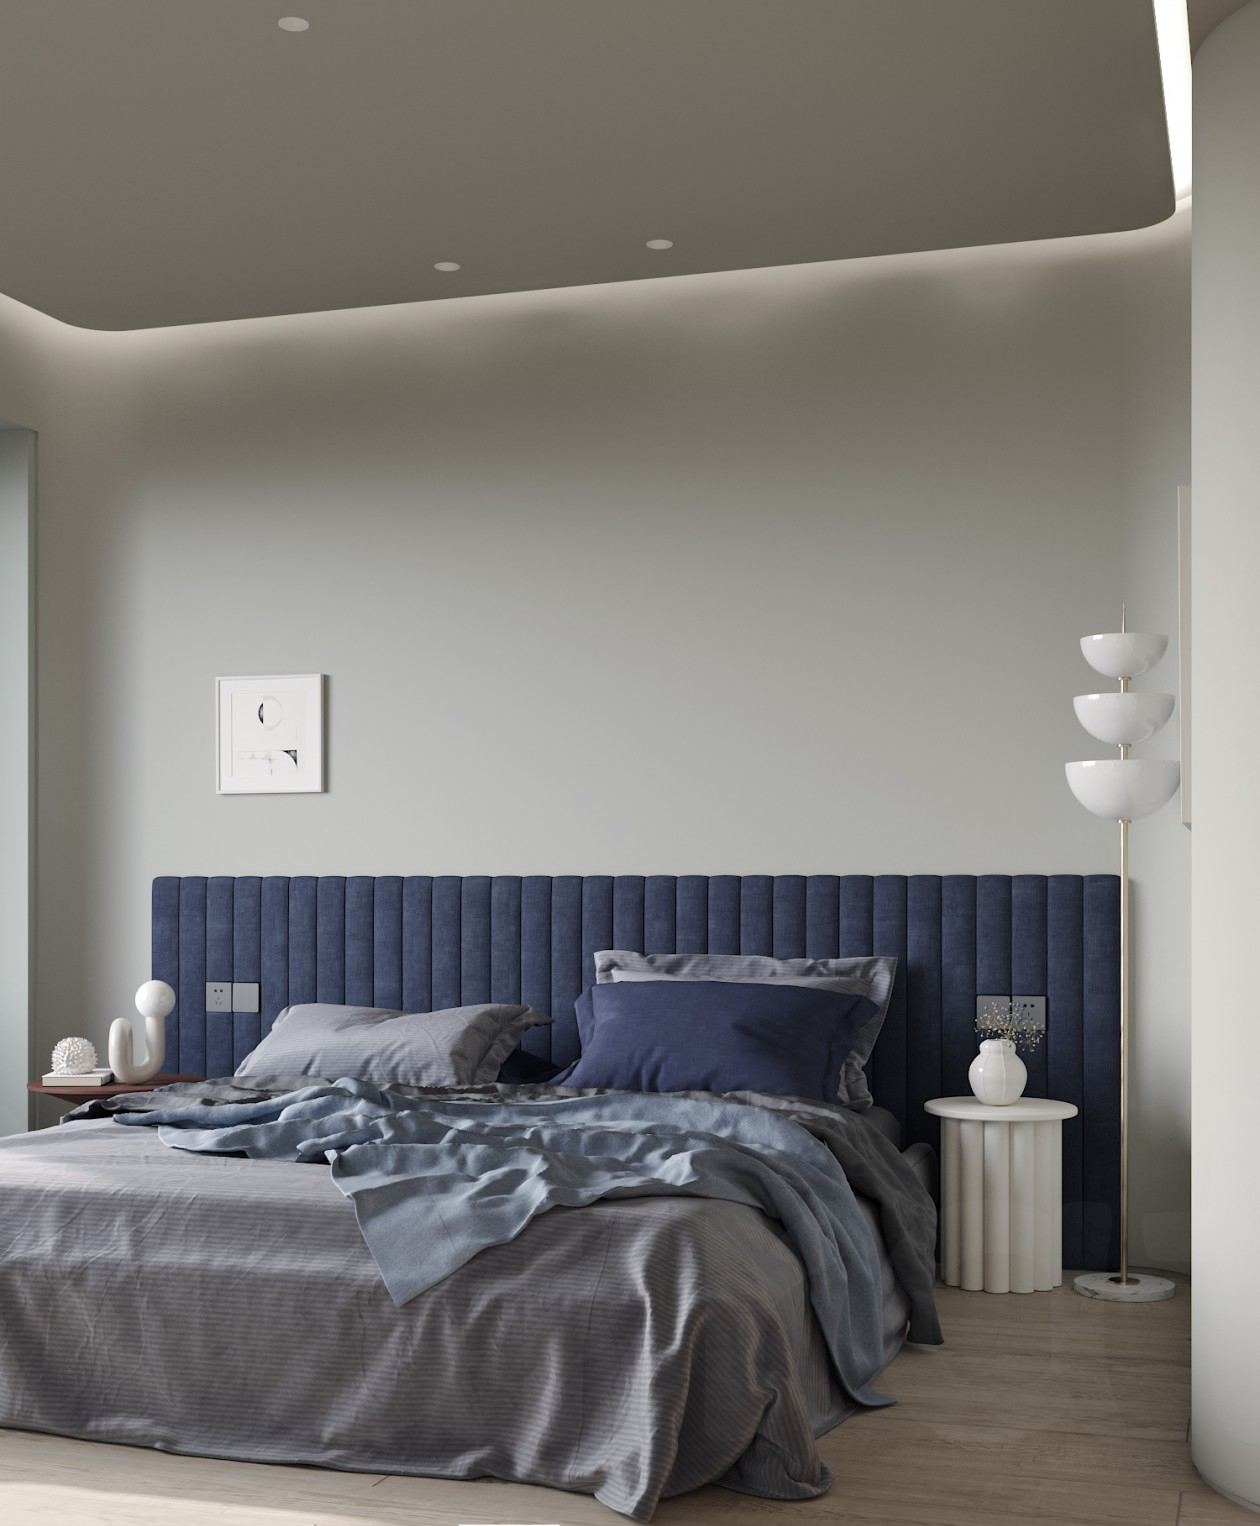 卧室隔音板市面上最常见的一种卧室隔音板是在两块板间安装类似于橡胶